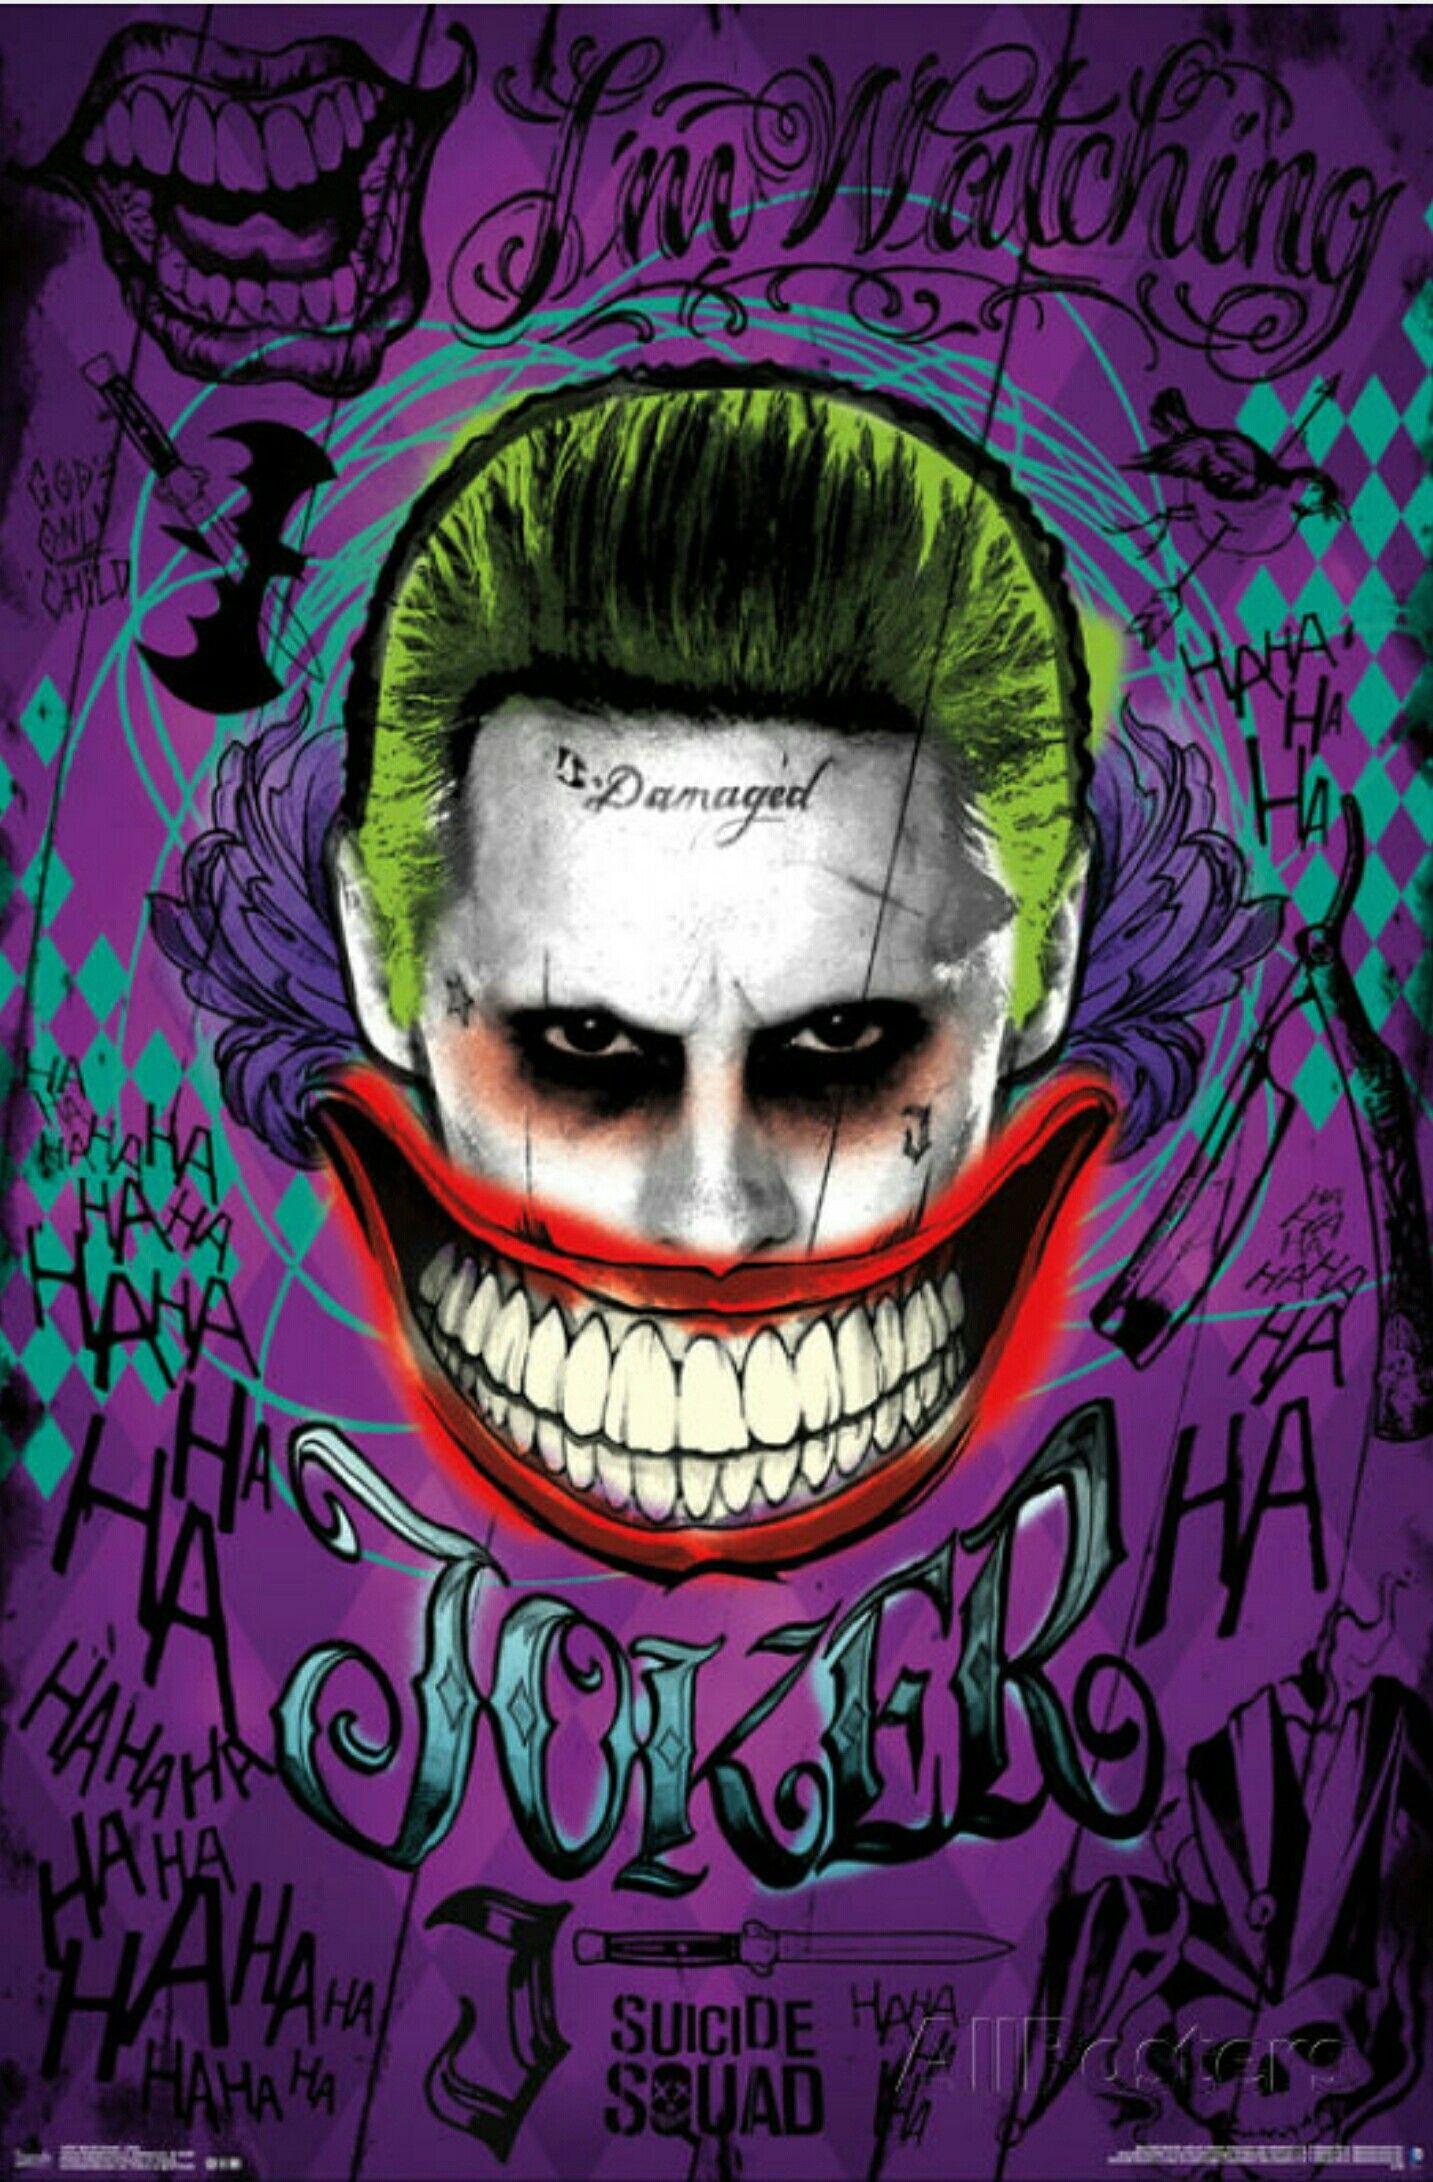 40 Gambar Joker Hahaha Wallpaper Hd terbaru 2020